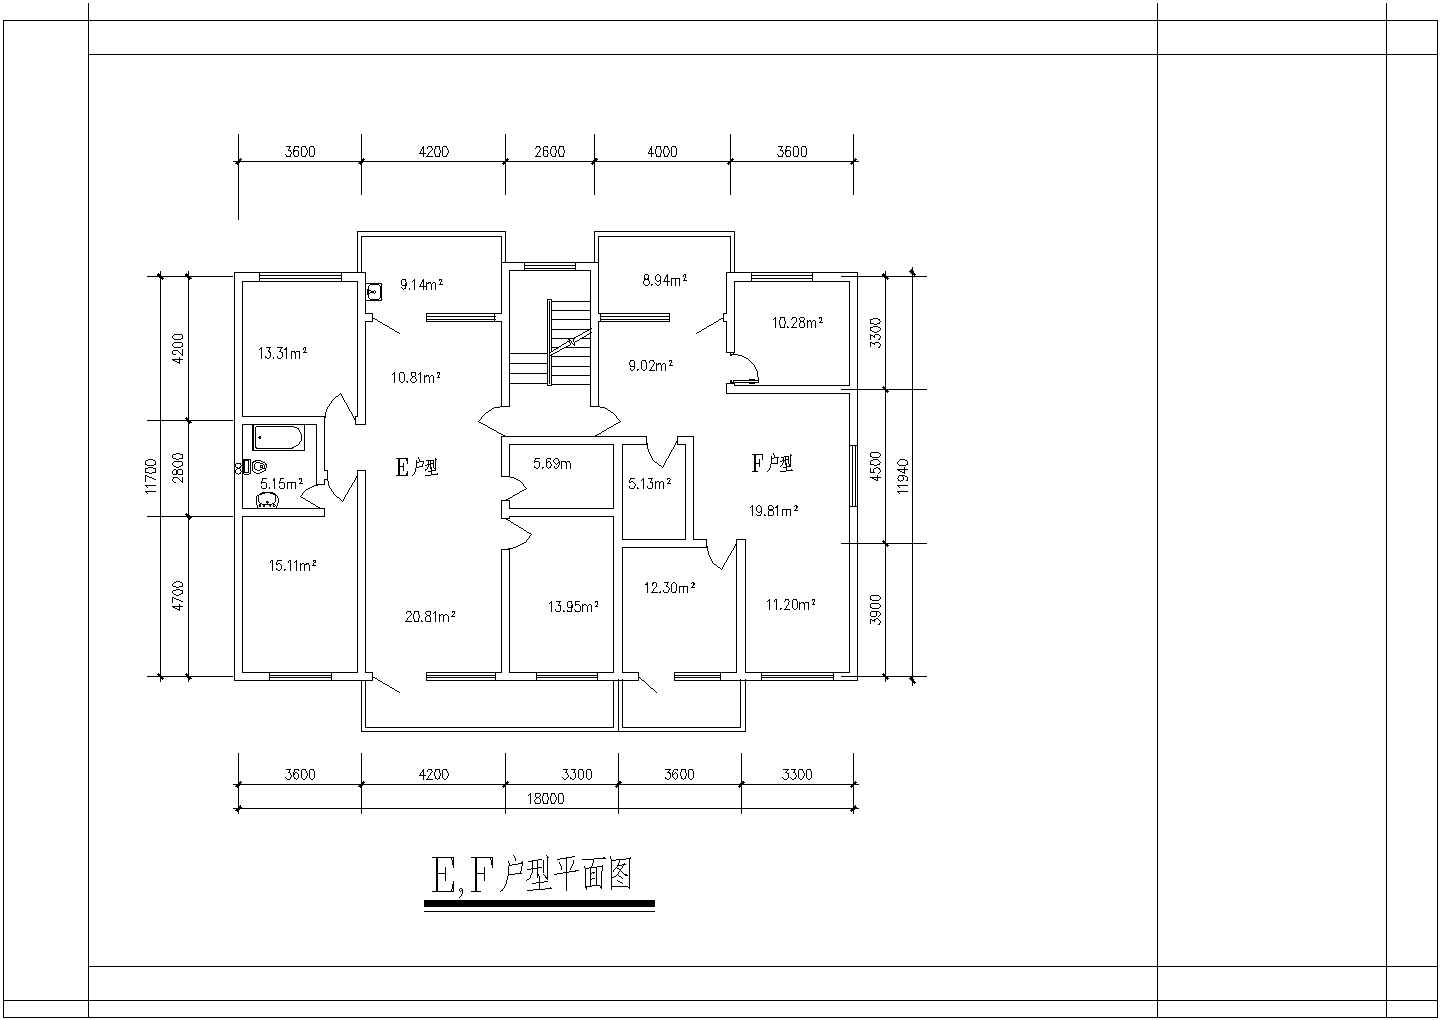 120至140平米的户型住宅楼全套施工设计cad图纸